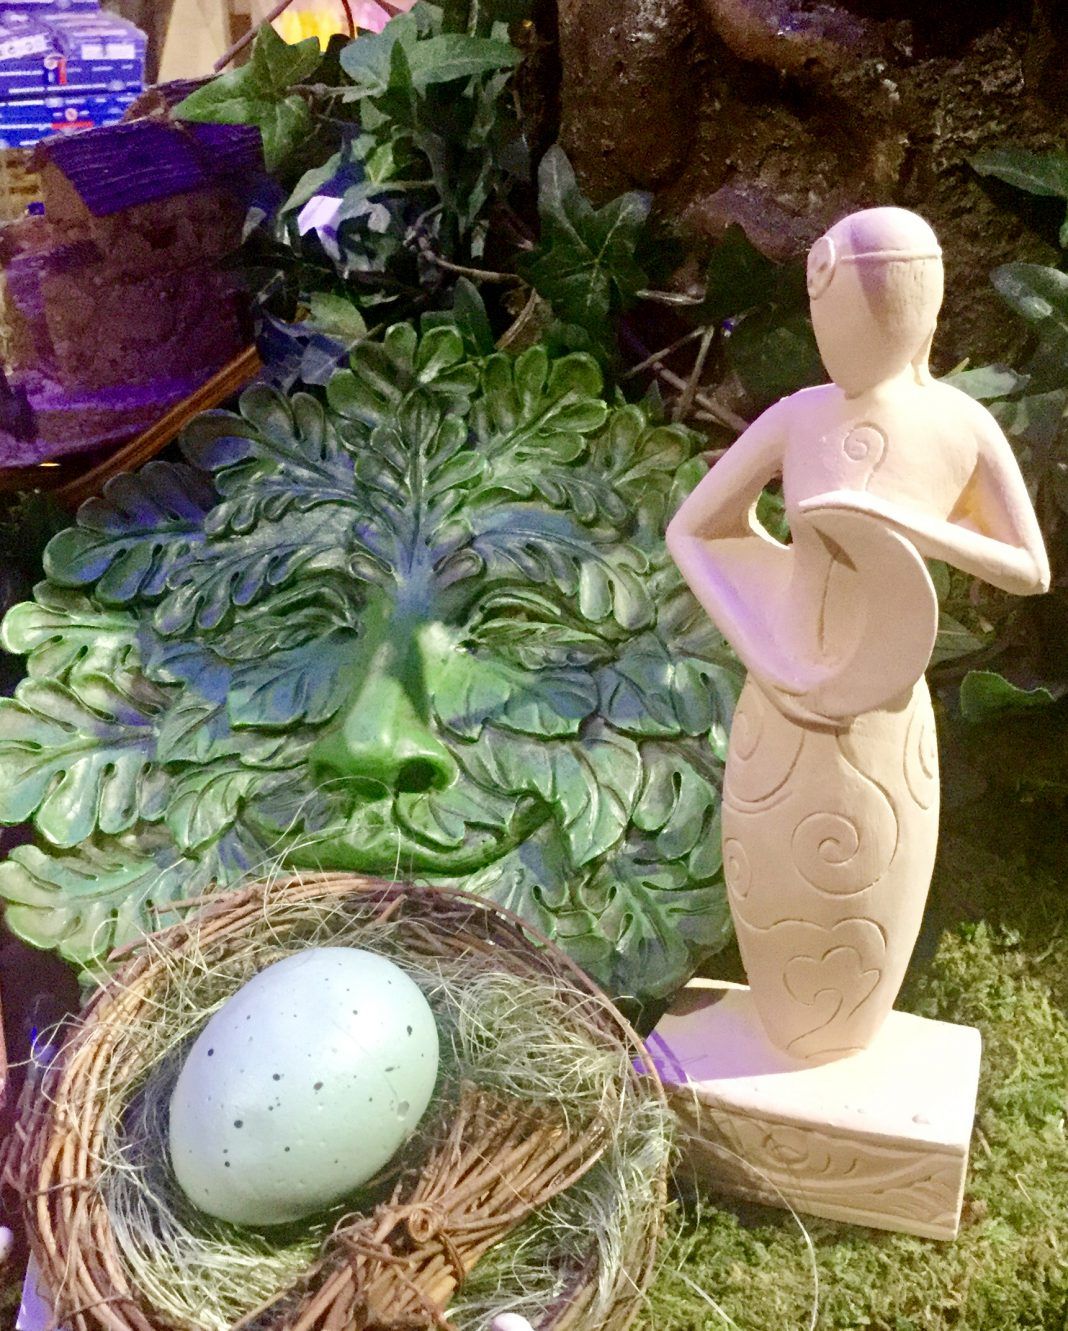 Gartendeko Licht Schön A Spring Goddess Statue Stands Next to An Egg the Egg is A